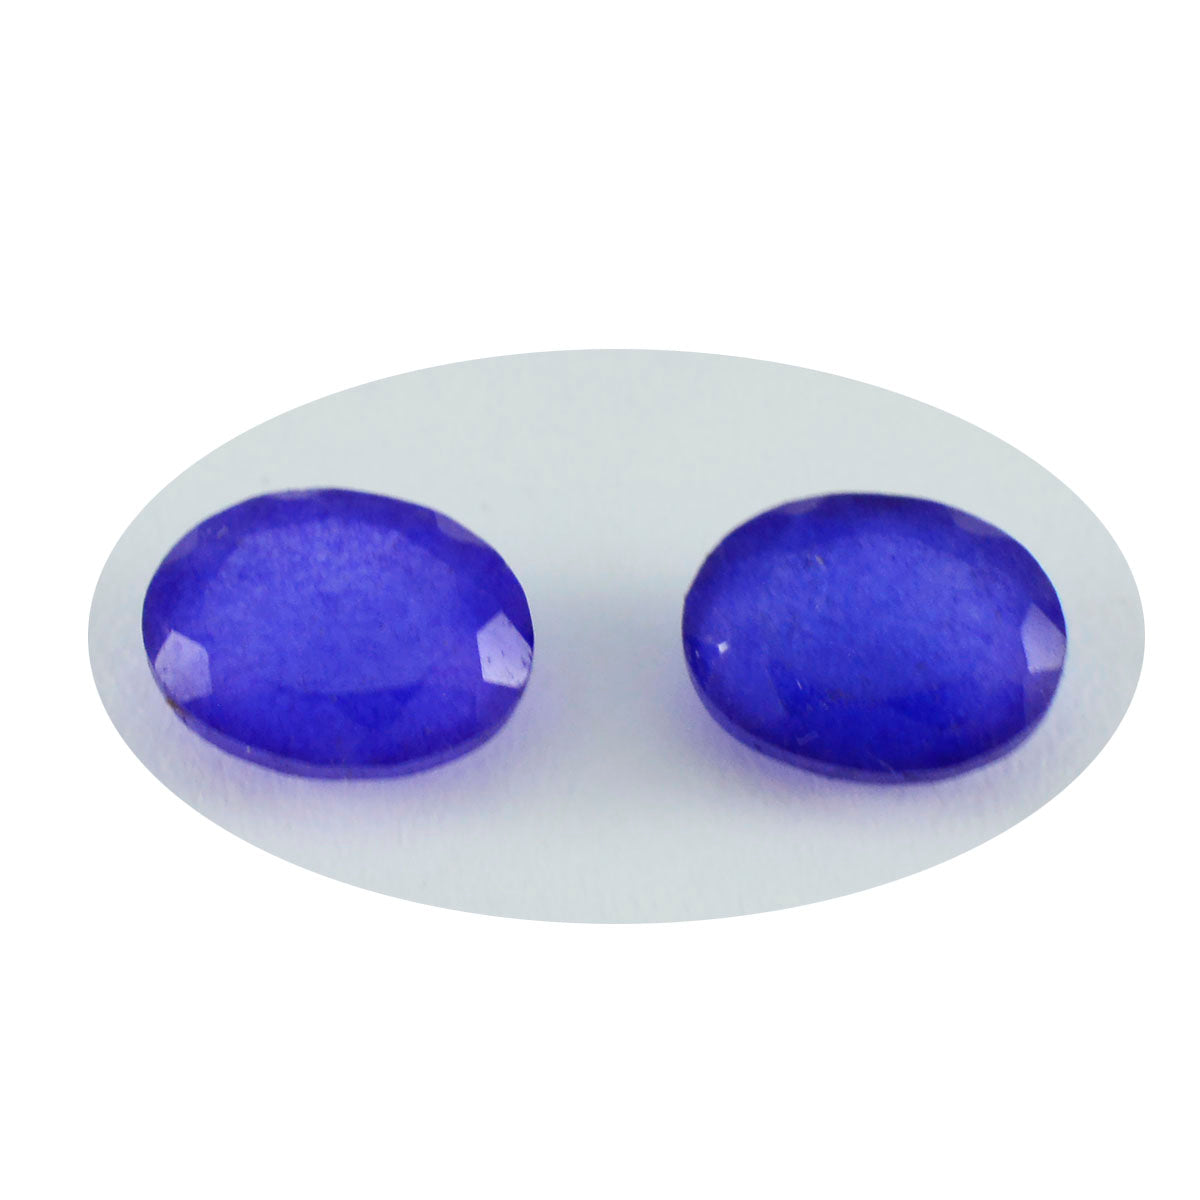 riyogems 1шт натуральная синяя яшма граненая 6х8 мм овальная форма красивый качественный драгоценный камень